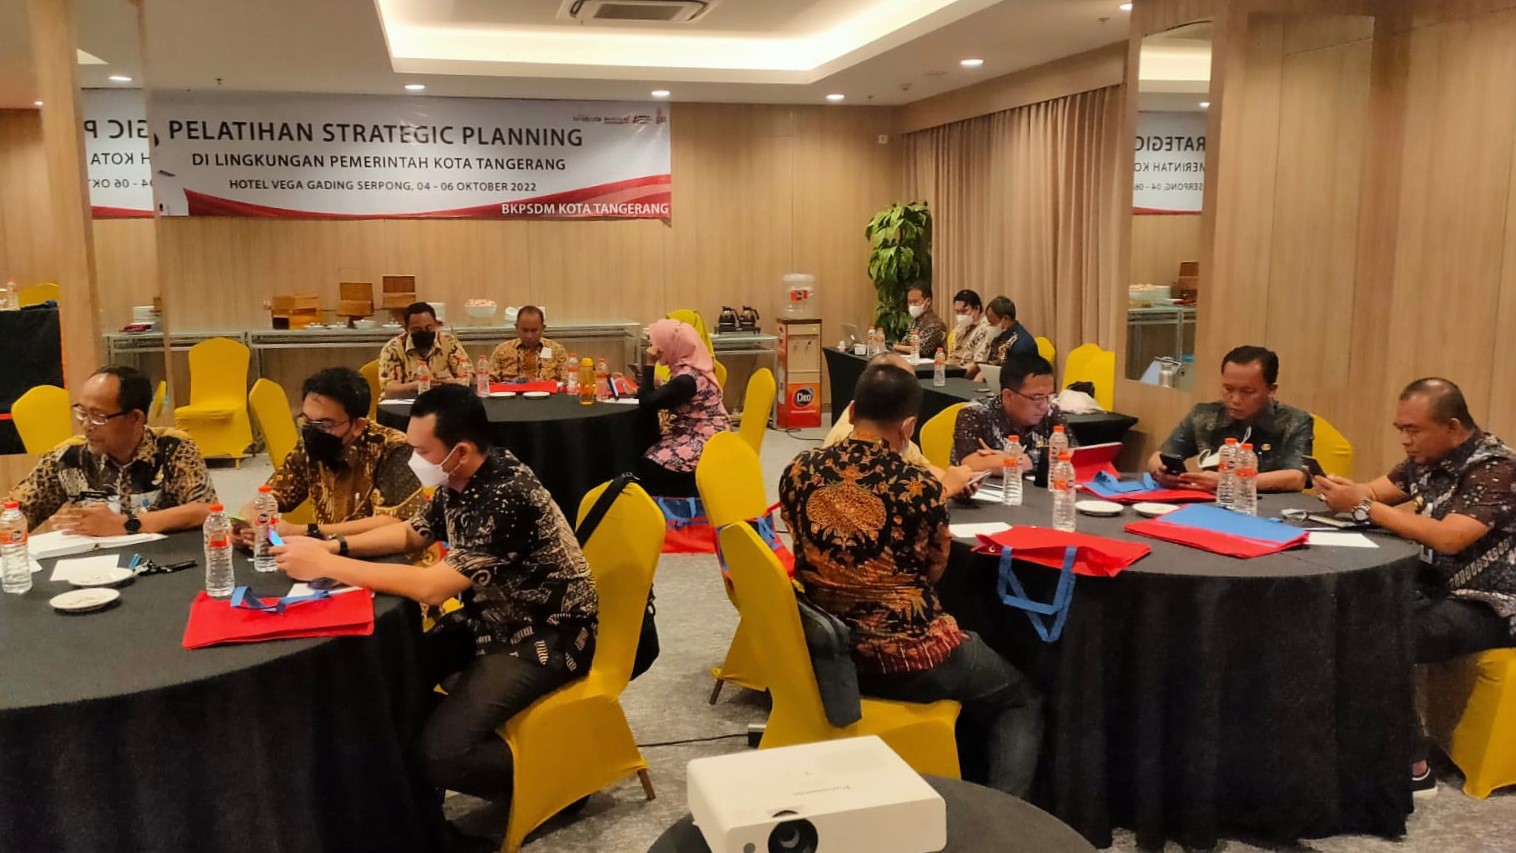 Menghadiri Pelatihan Startegic Planning di Lingkungan Pemerintah Kota Tangerang